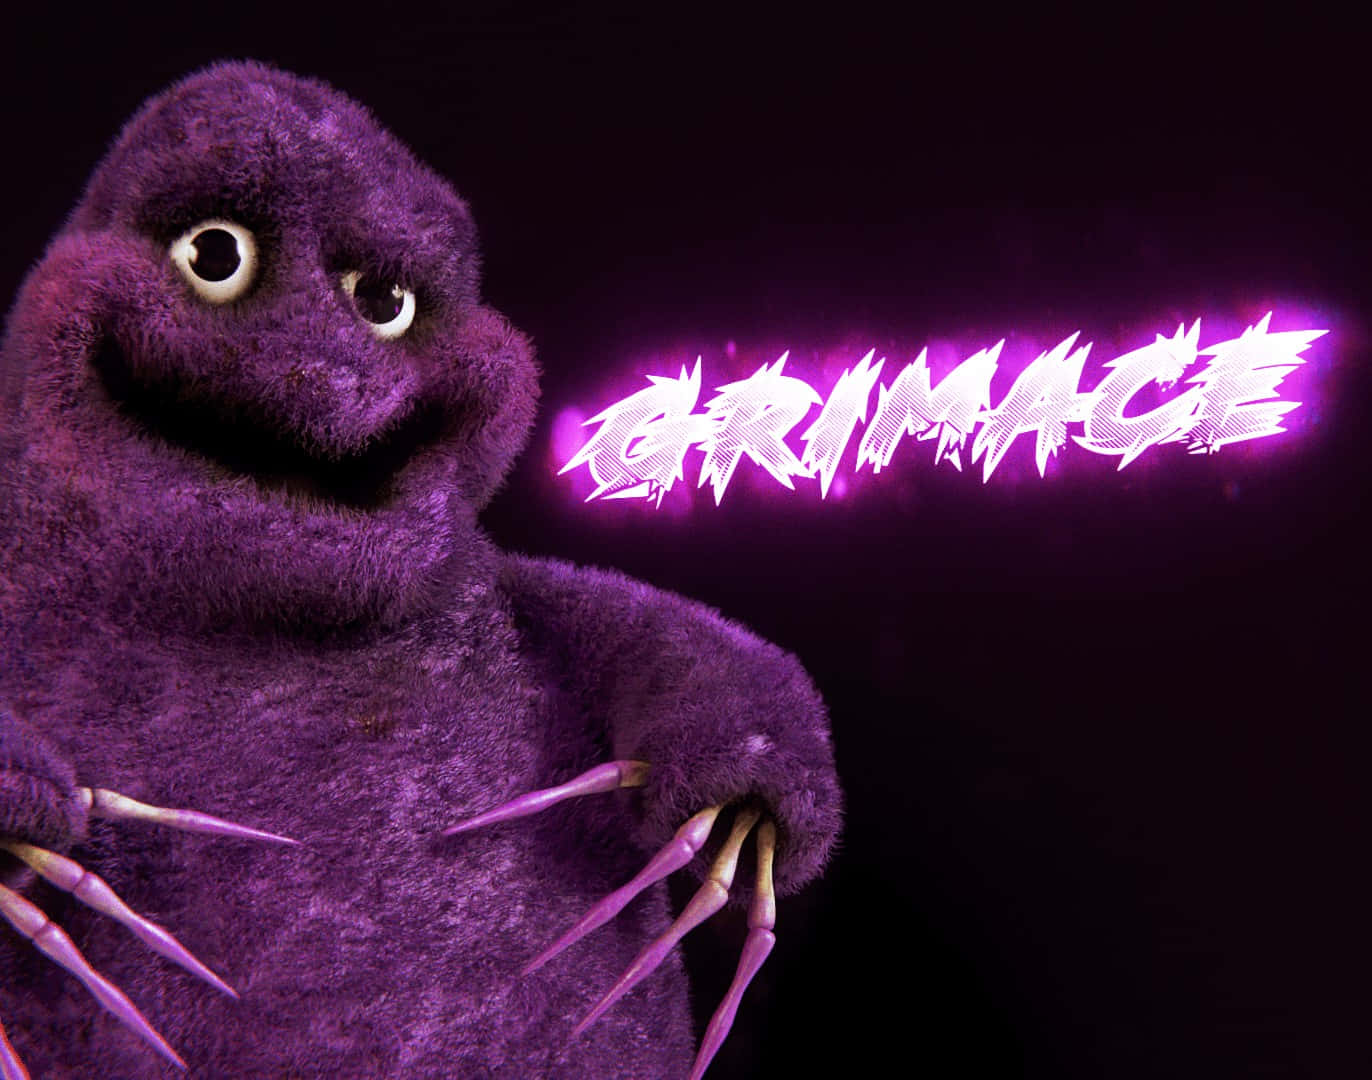 Purple Monster Grimace Illustration